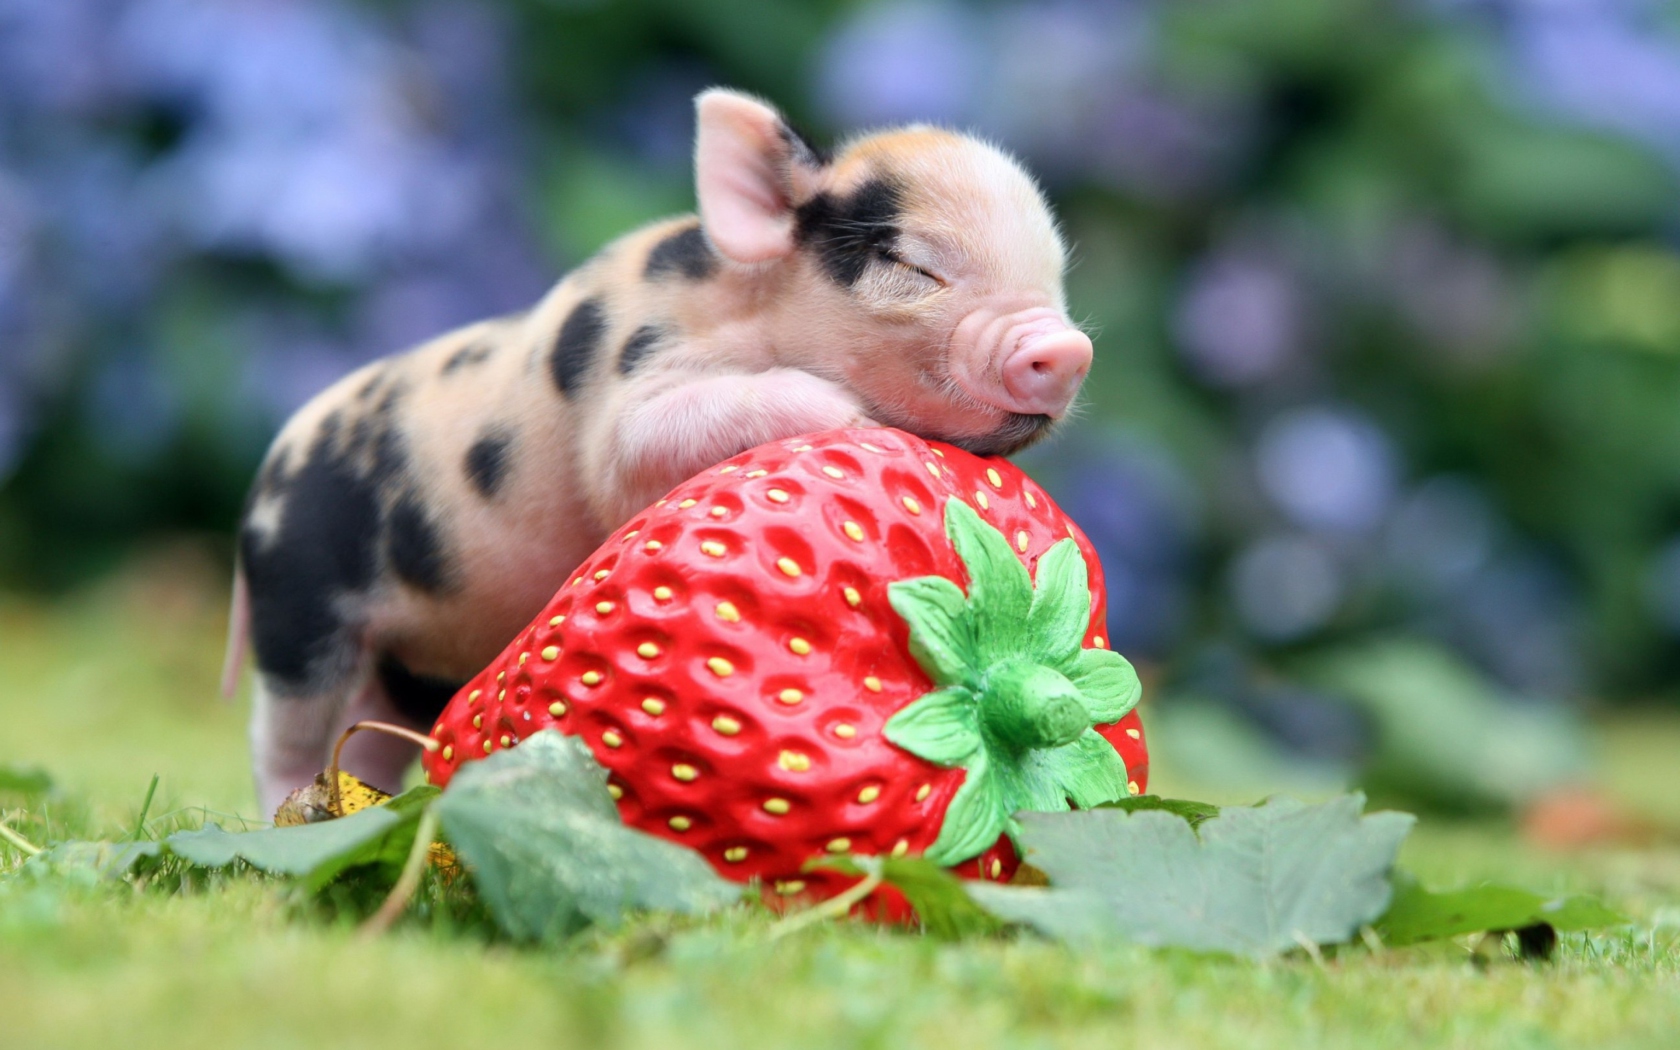 Sfondi Cute Little Piglet And Strawberry 1680x1050